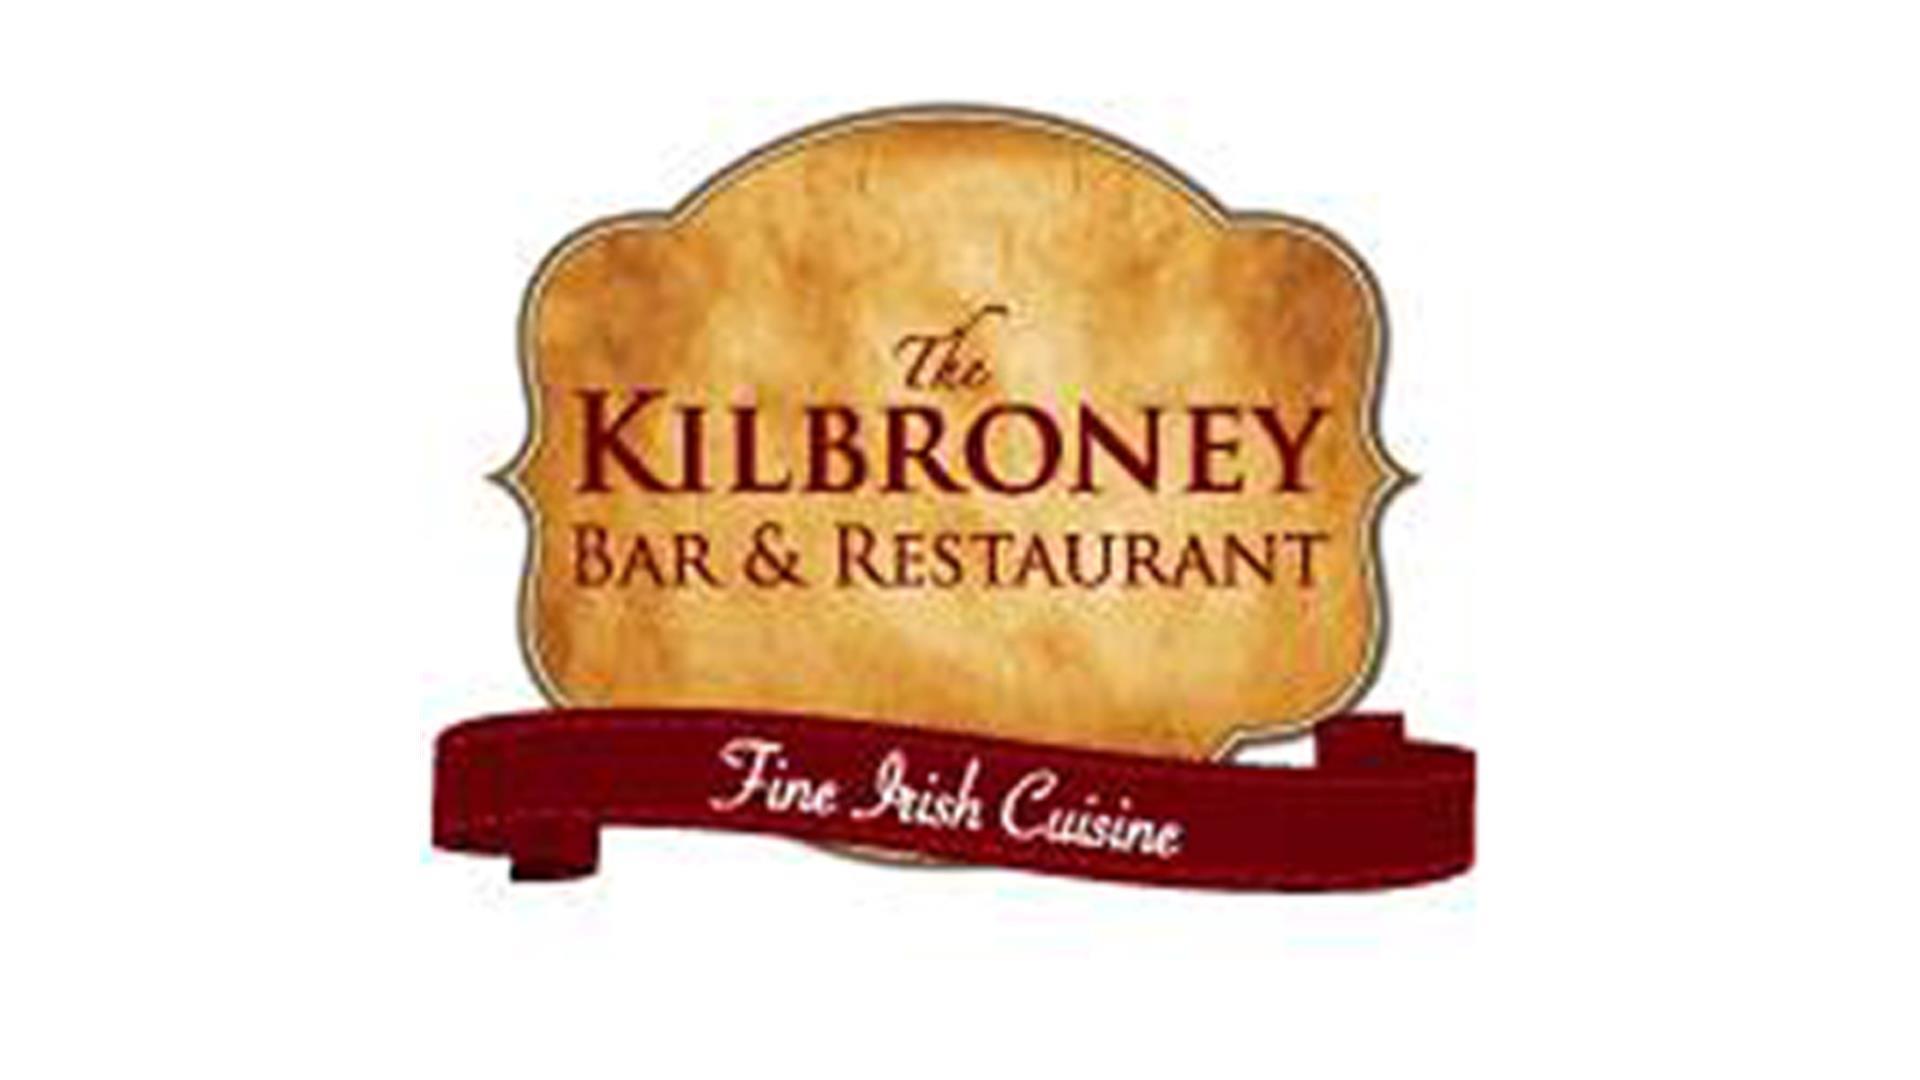 The Kilbroney Bar & Restaurant